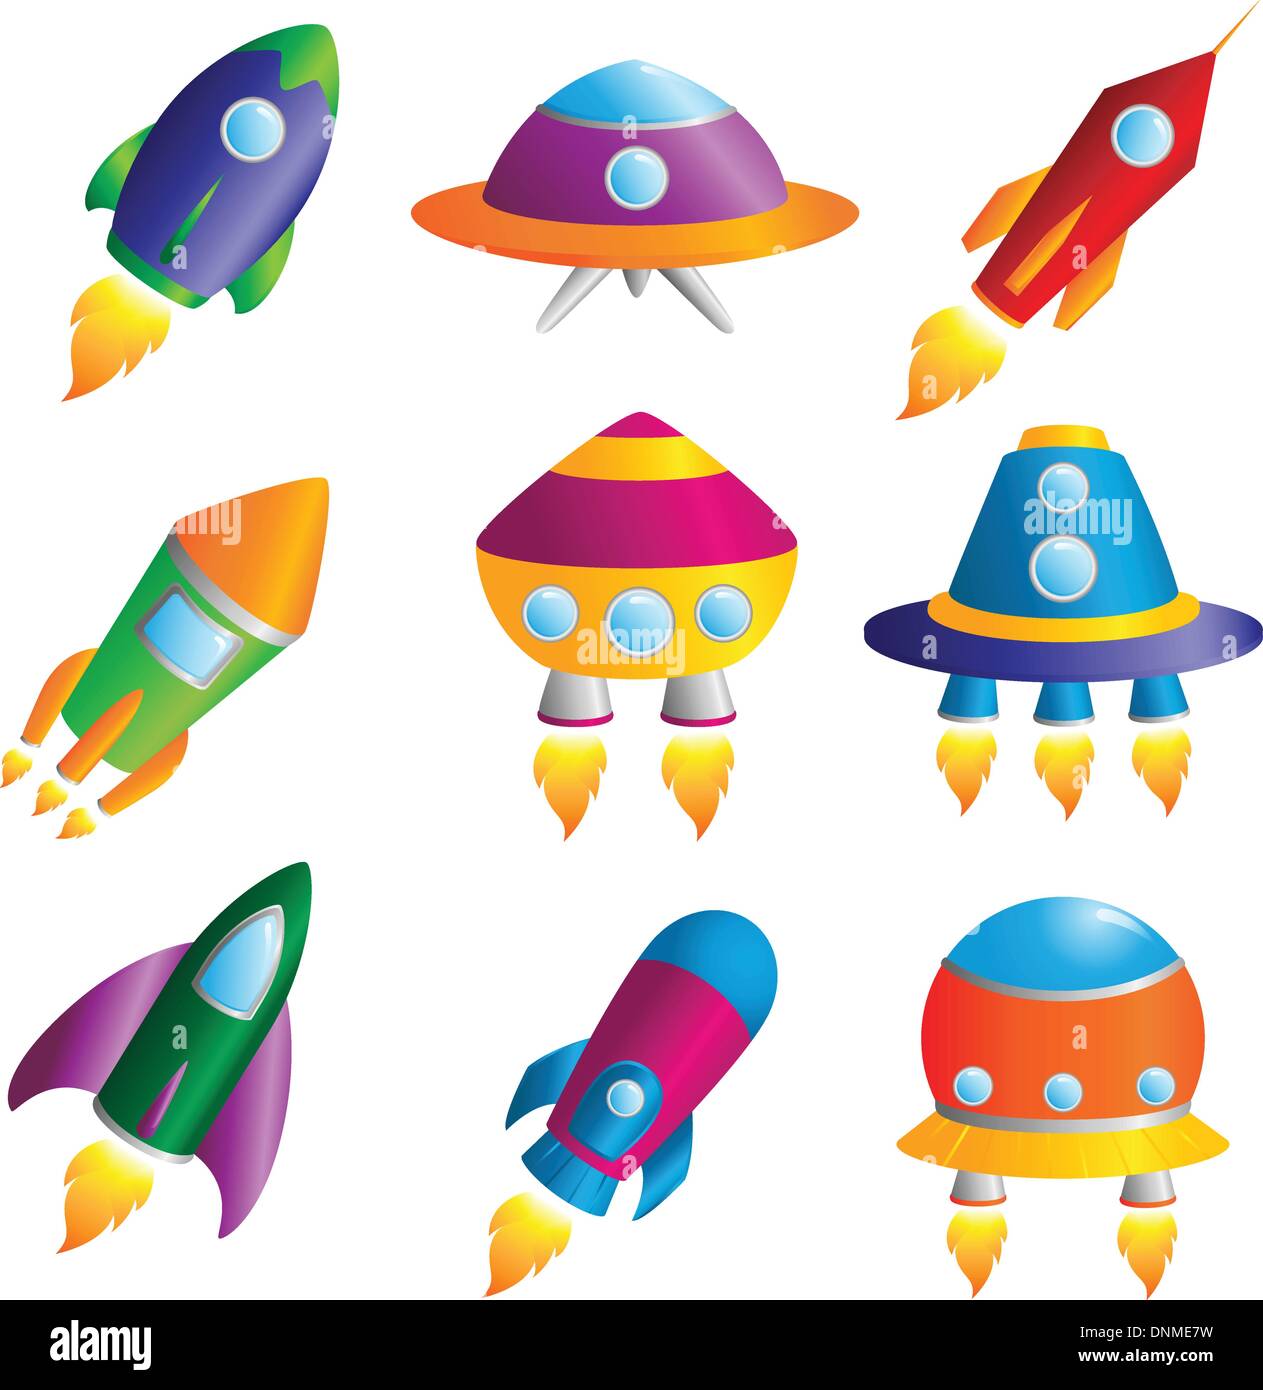 Eine Sammlung von bunten Raketen Icons eine Vektor-illustration Stock Vektor